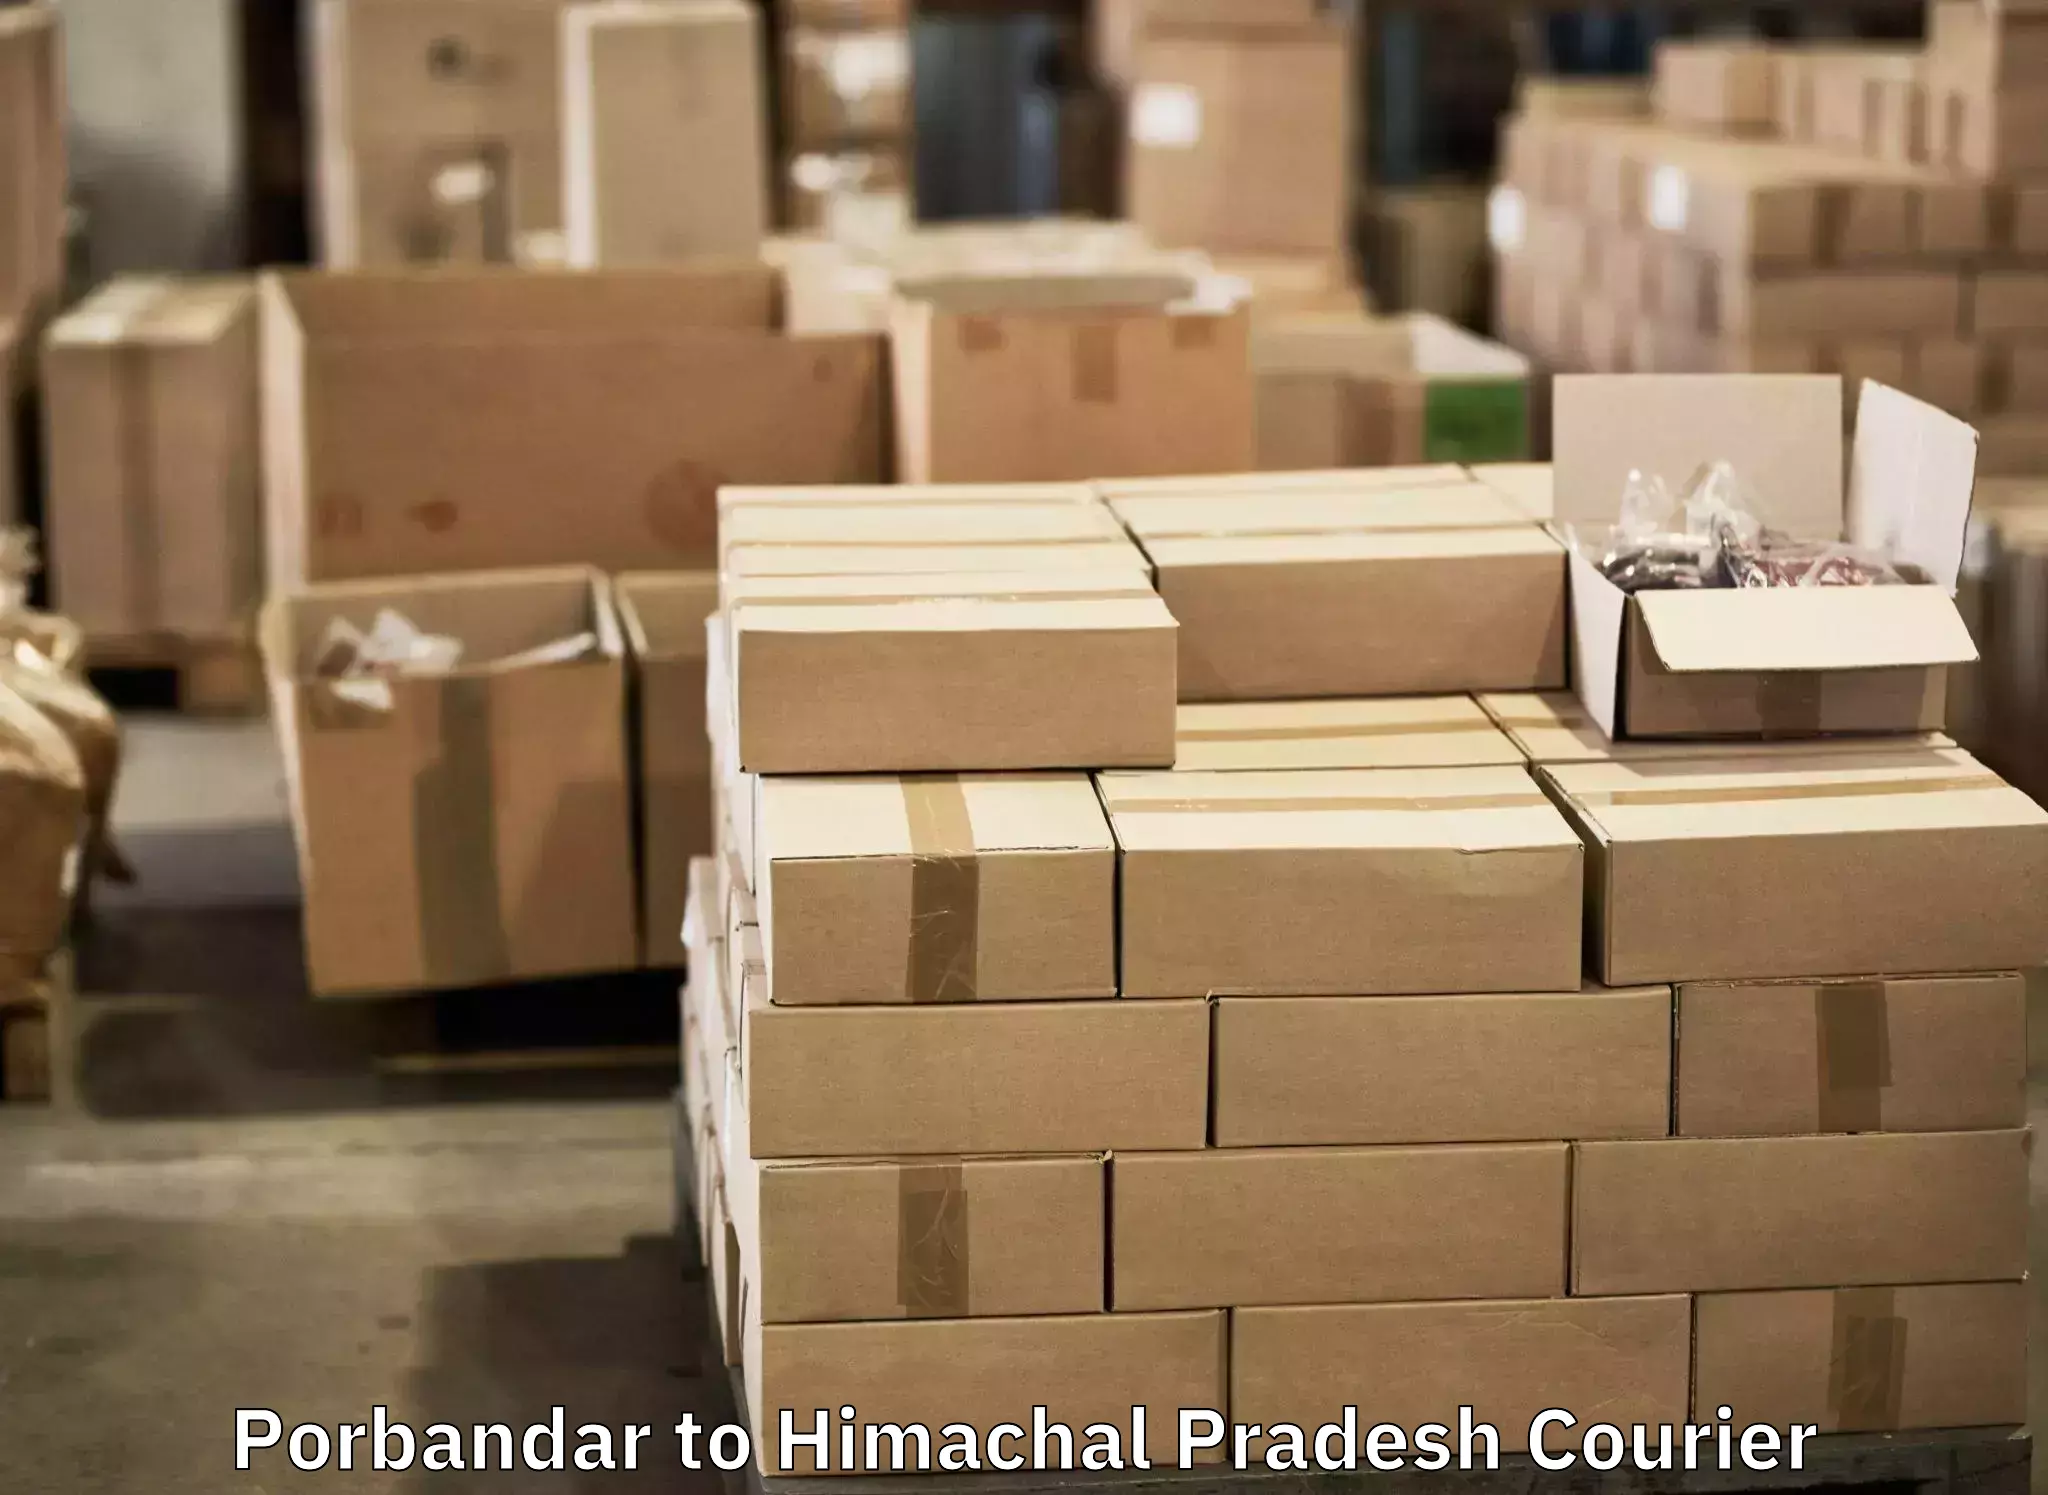 Urgent luggage shipment in Porbandar to Raipur Sahoran